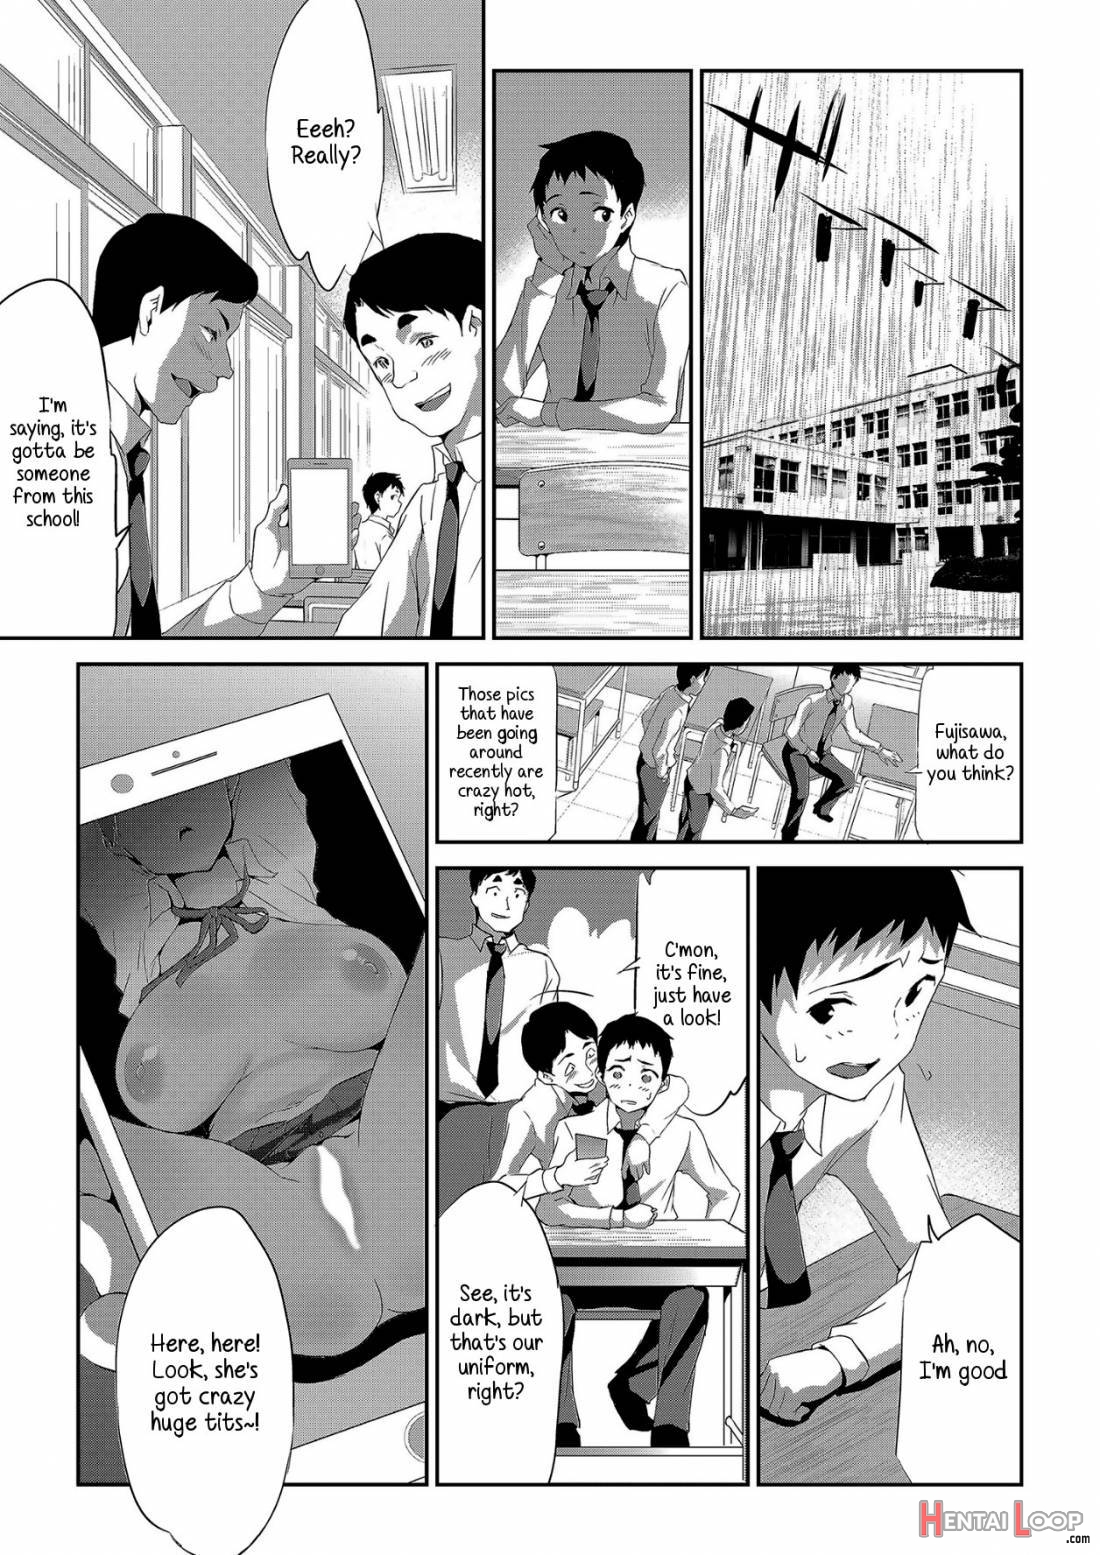 Himitsu 05 “Gomen ne” page 20